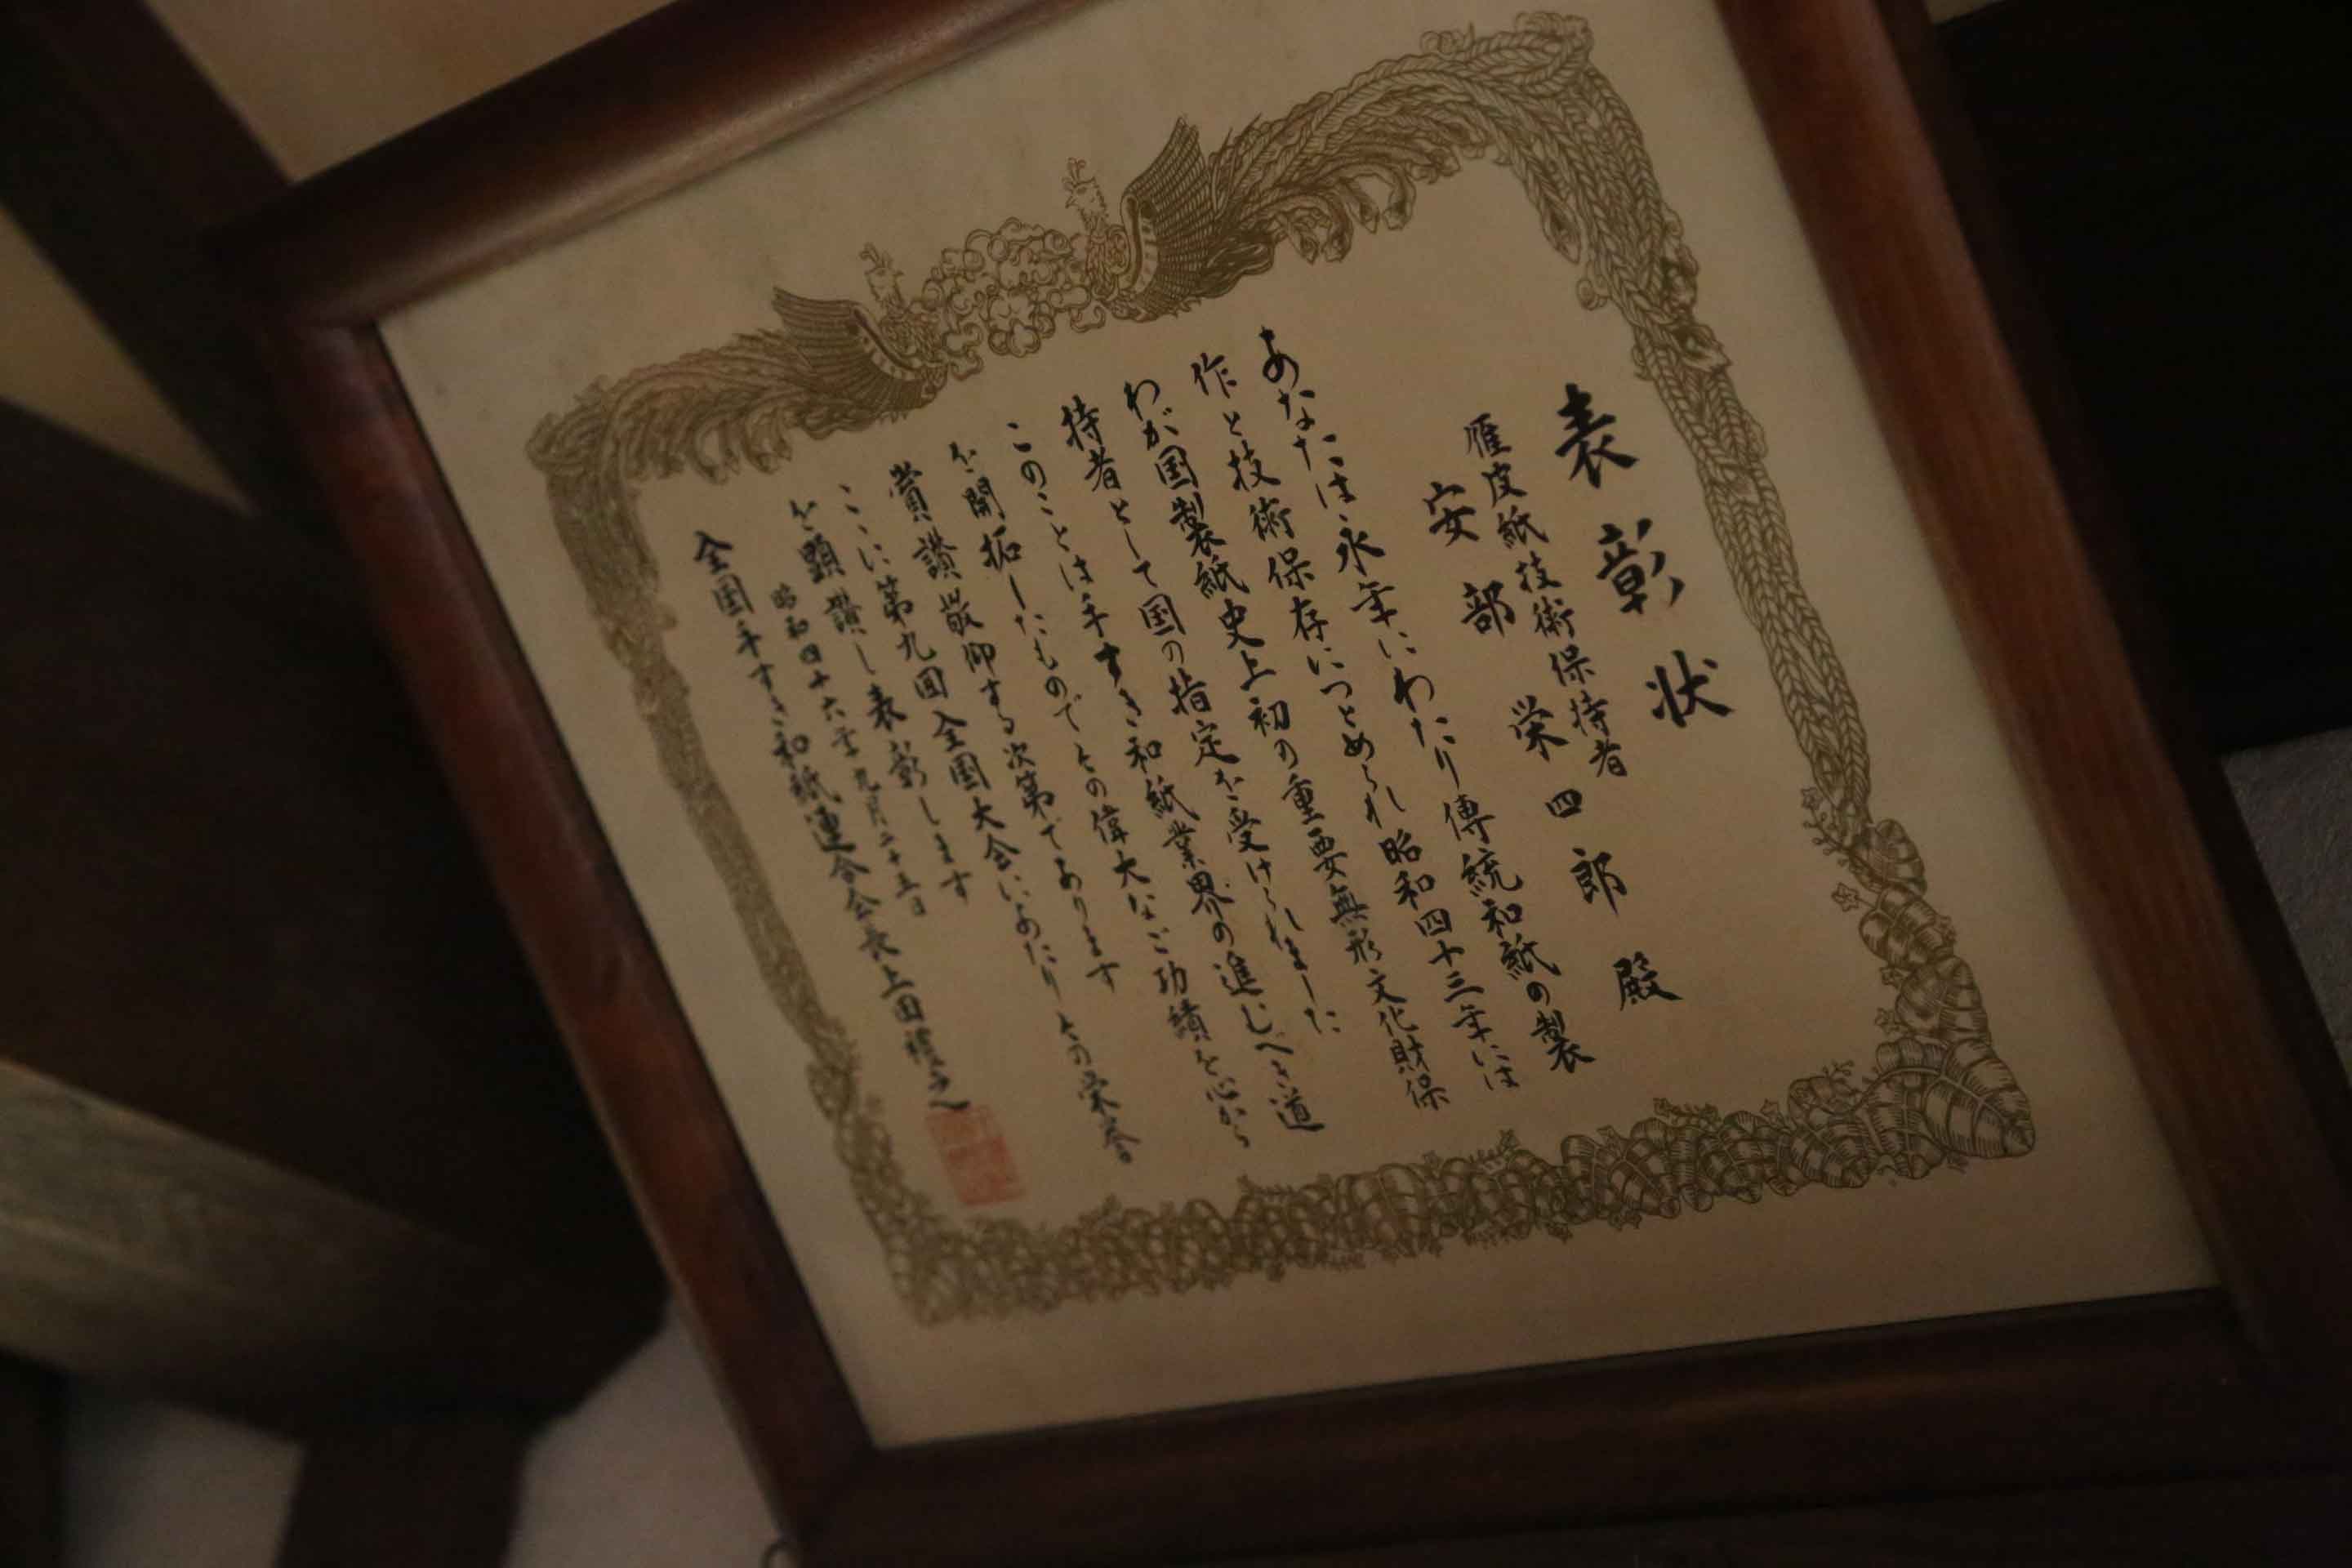 安部栄四郎氏の紙漉きの技術を高く評価され、各界の賞を多く受賞しました